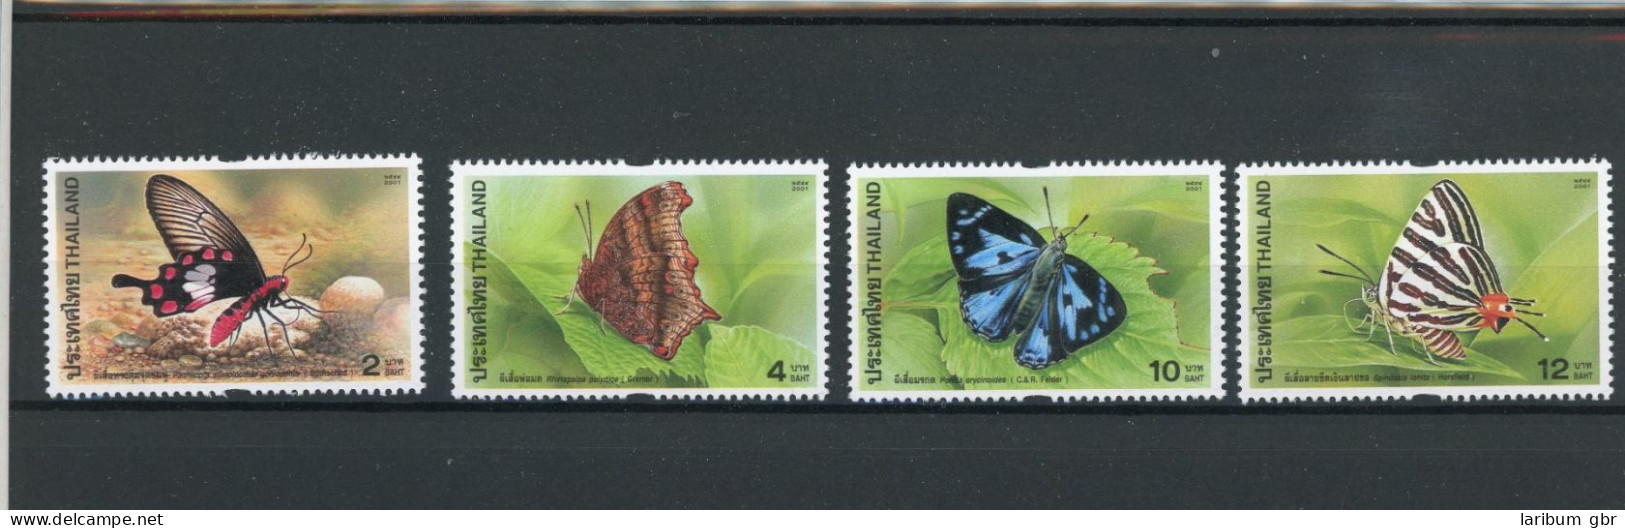 Thailand 2101-2104, M-Heft 2101, Block Postfrisch Schmetterling #JT760 - Thailand